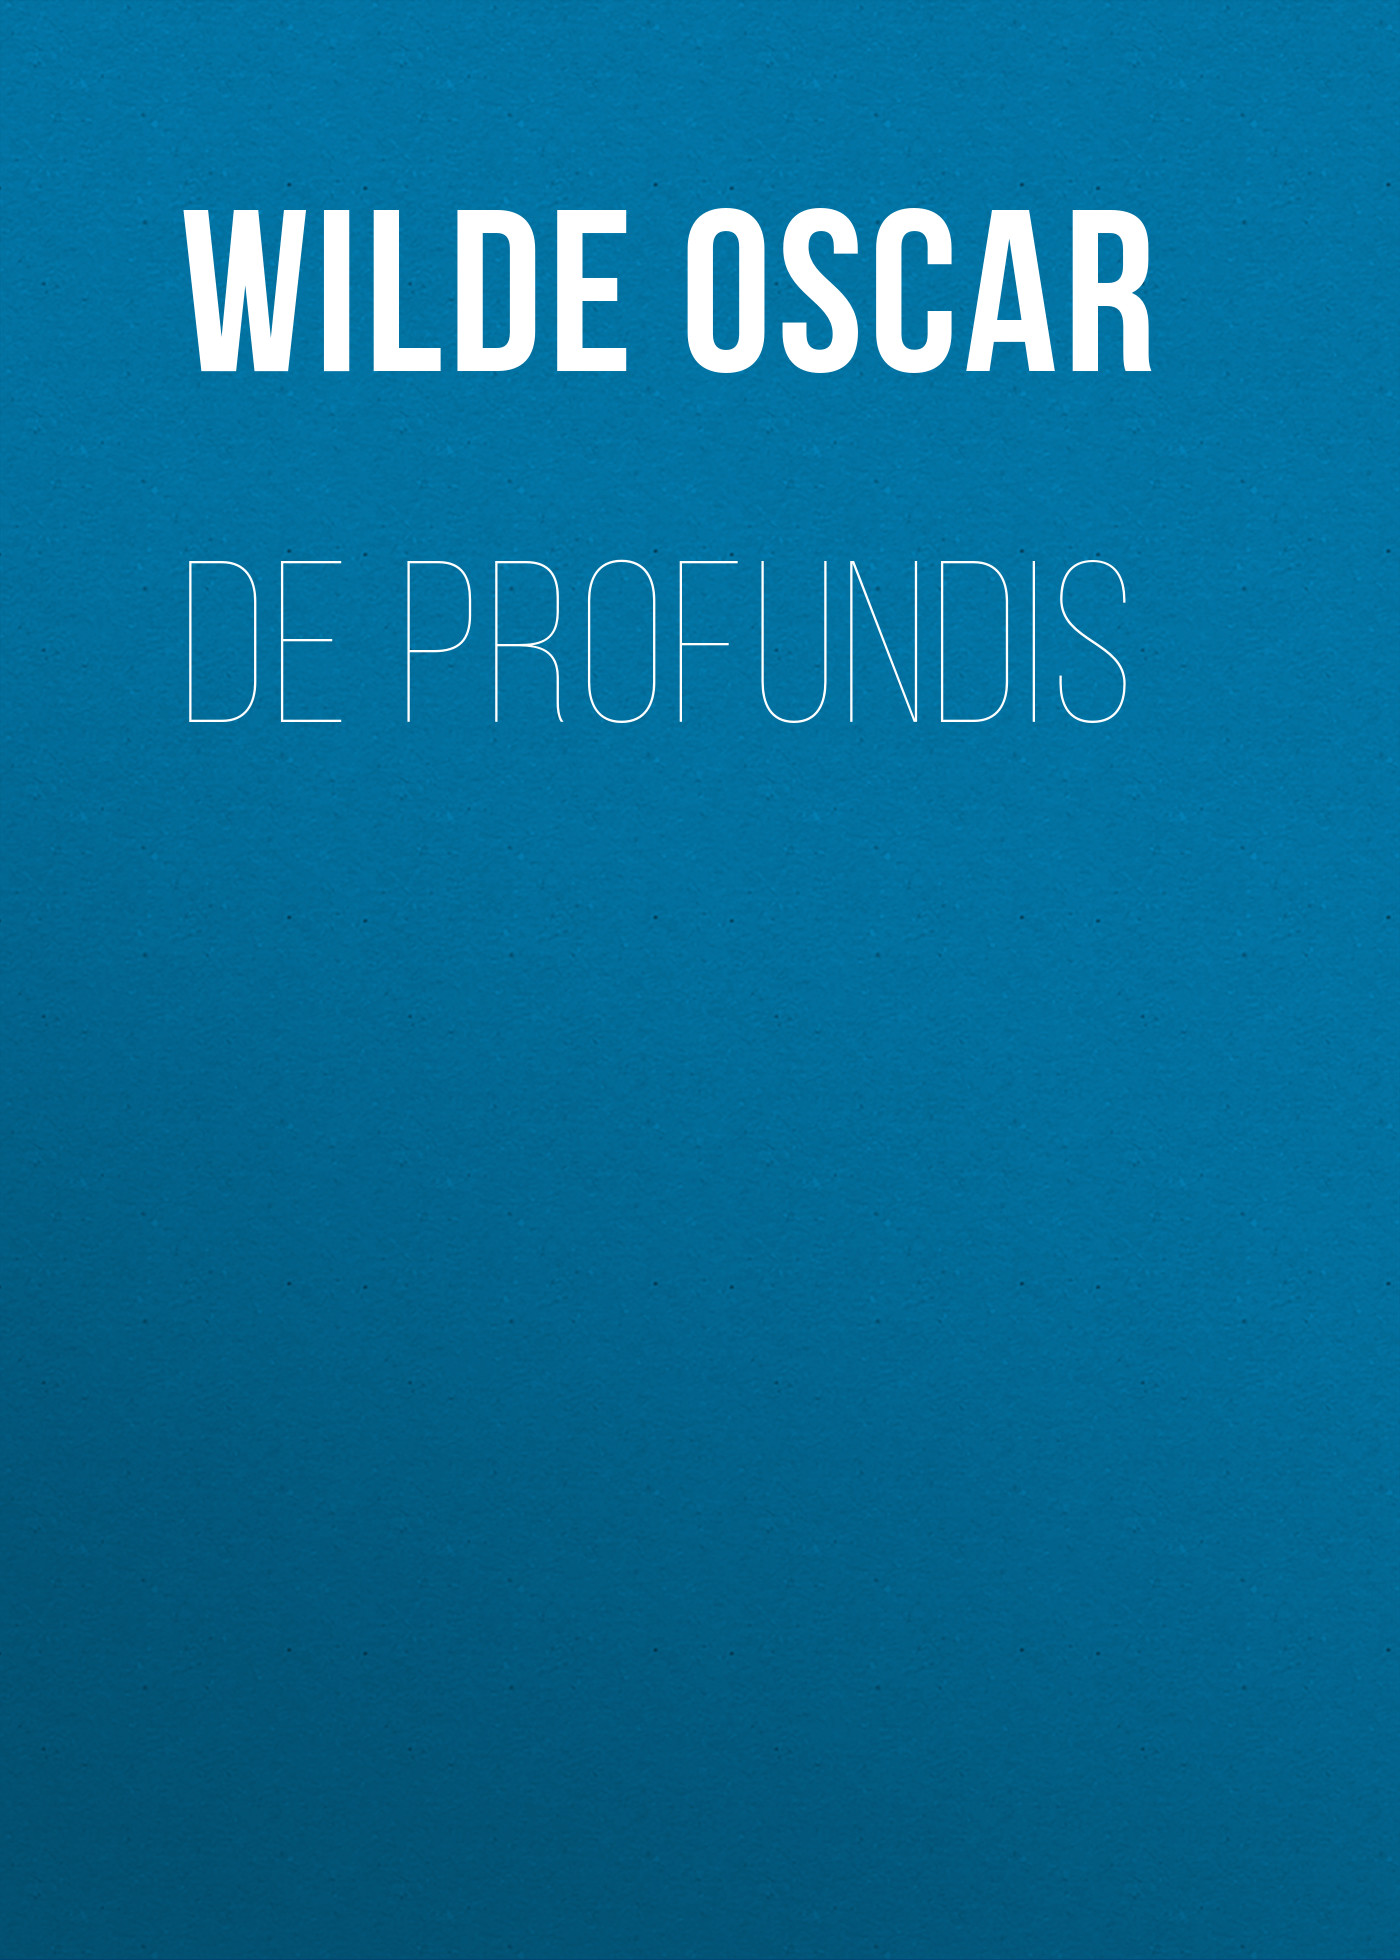 Книга De Profundis из серии , созданная Oscar Wilde, может относится к жанру Литература 19 века, Зарубежная классика. Стоимость электронной книги De Profundis с идентификатором 25560348 составляет 0 руб.